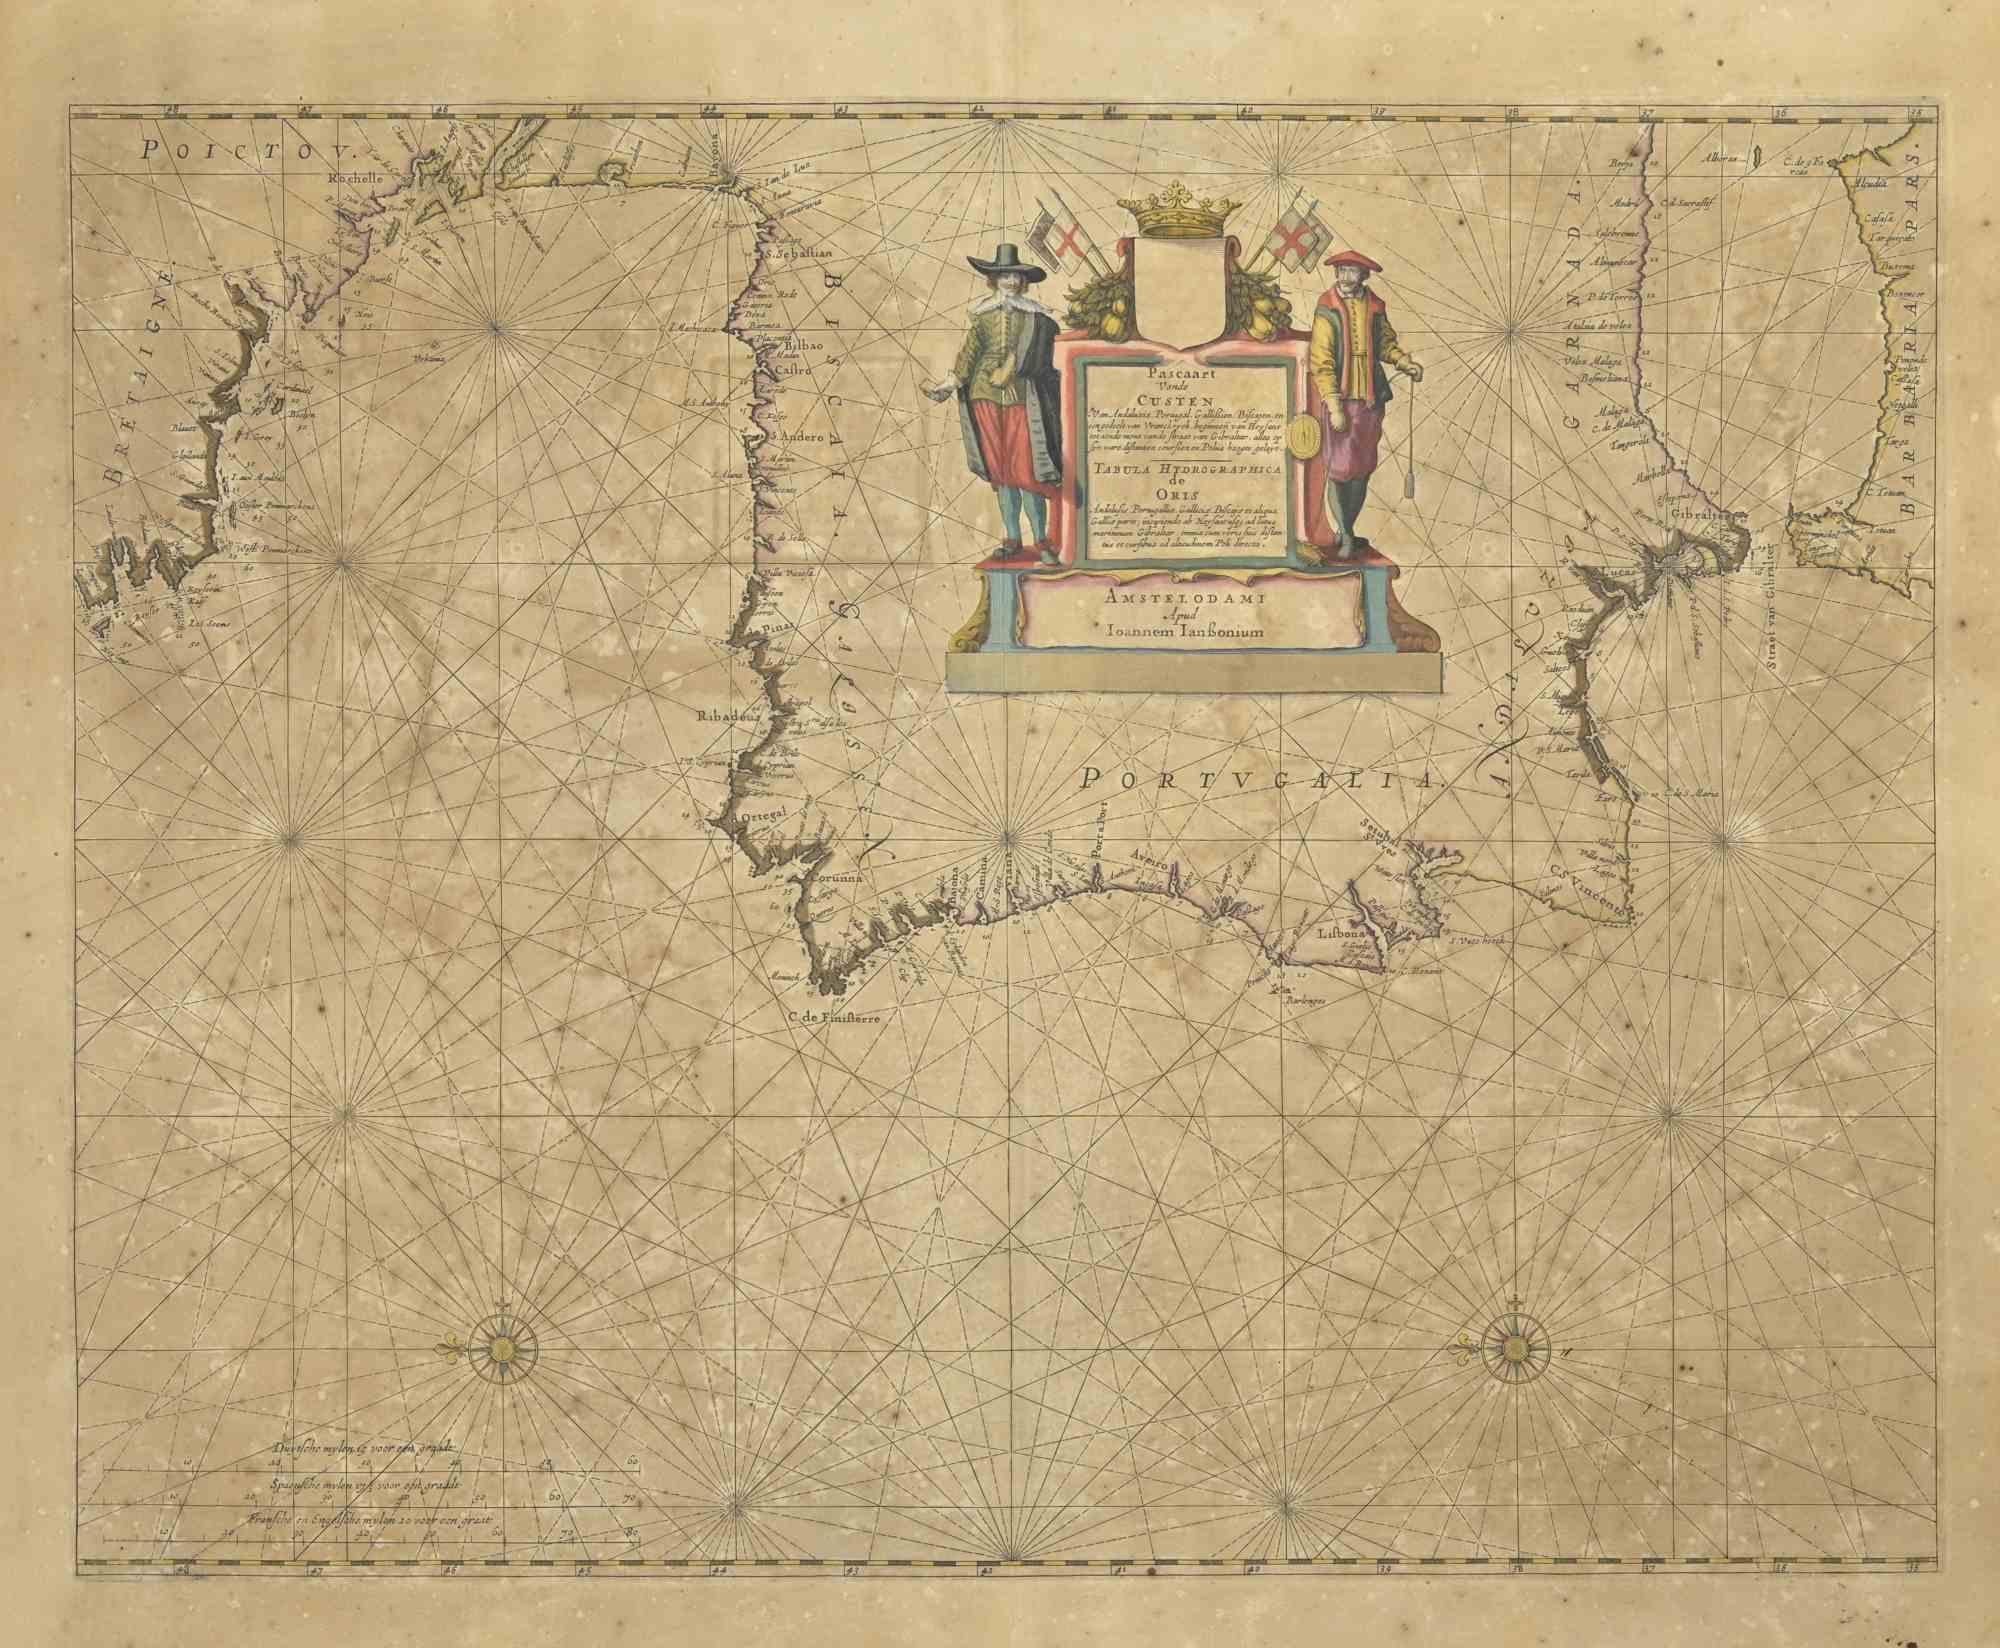 Carte ancienne - Gallia est une carte ancienne réalisée en 1650 par Johannes Janssonius (1588-1664).

La carte est une gravure à l'eau-forte coloriée à la main, avec aquarelle au même moment.

Bon état avec de légères rousseurs.

De Atlantis majoris